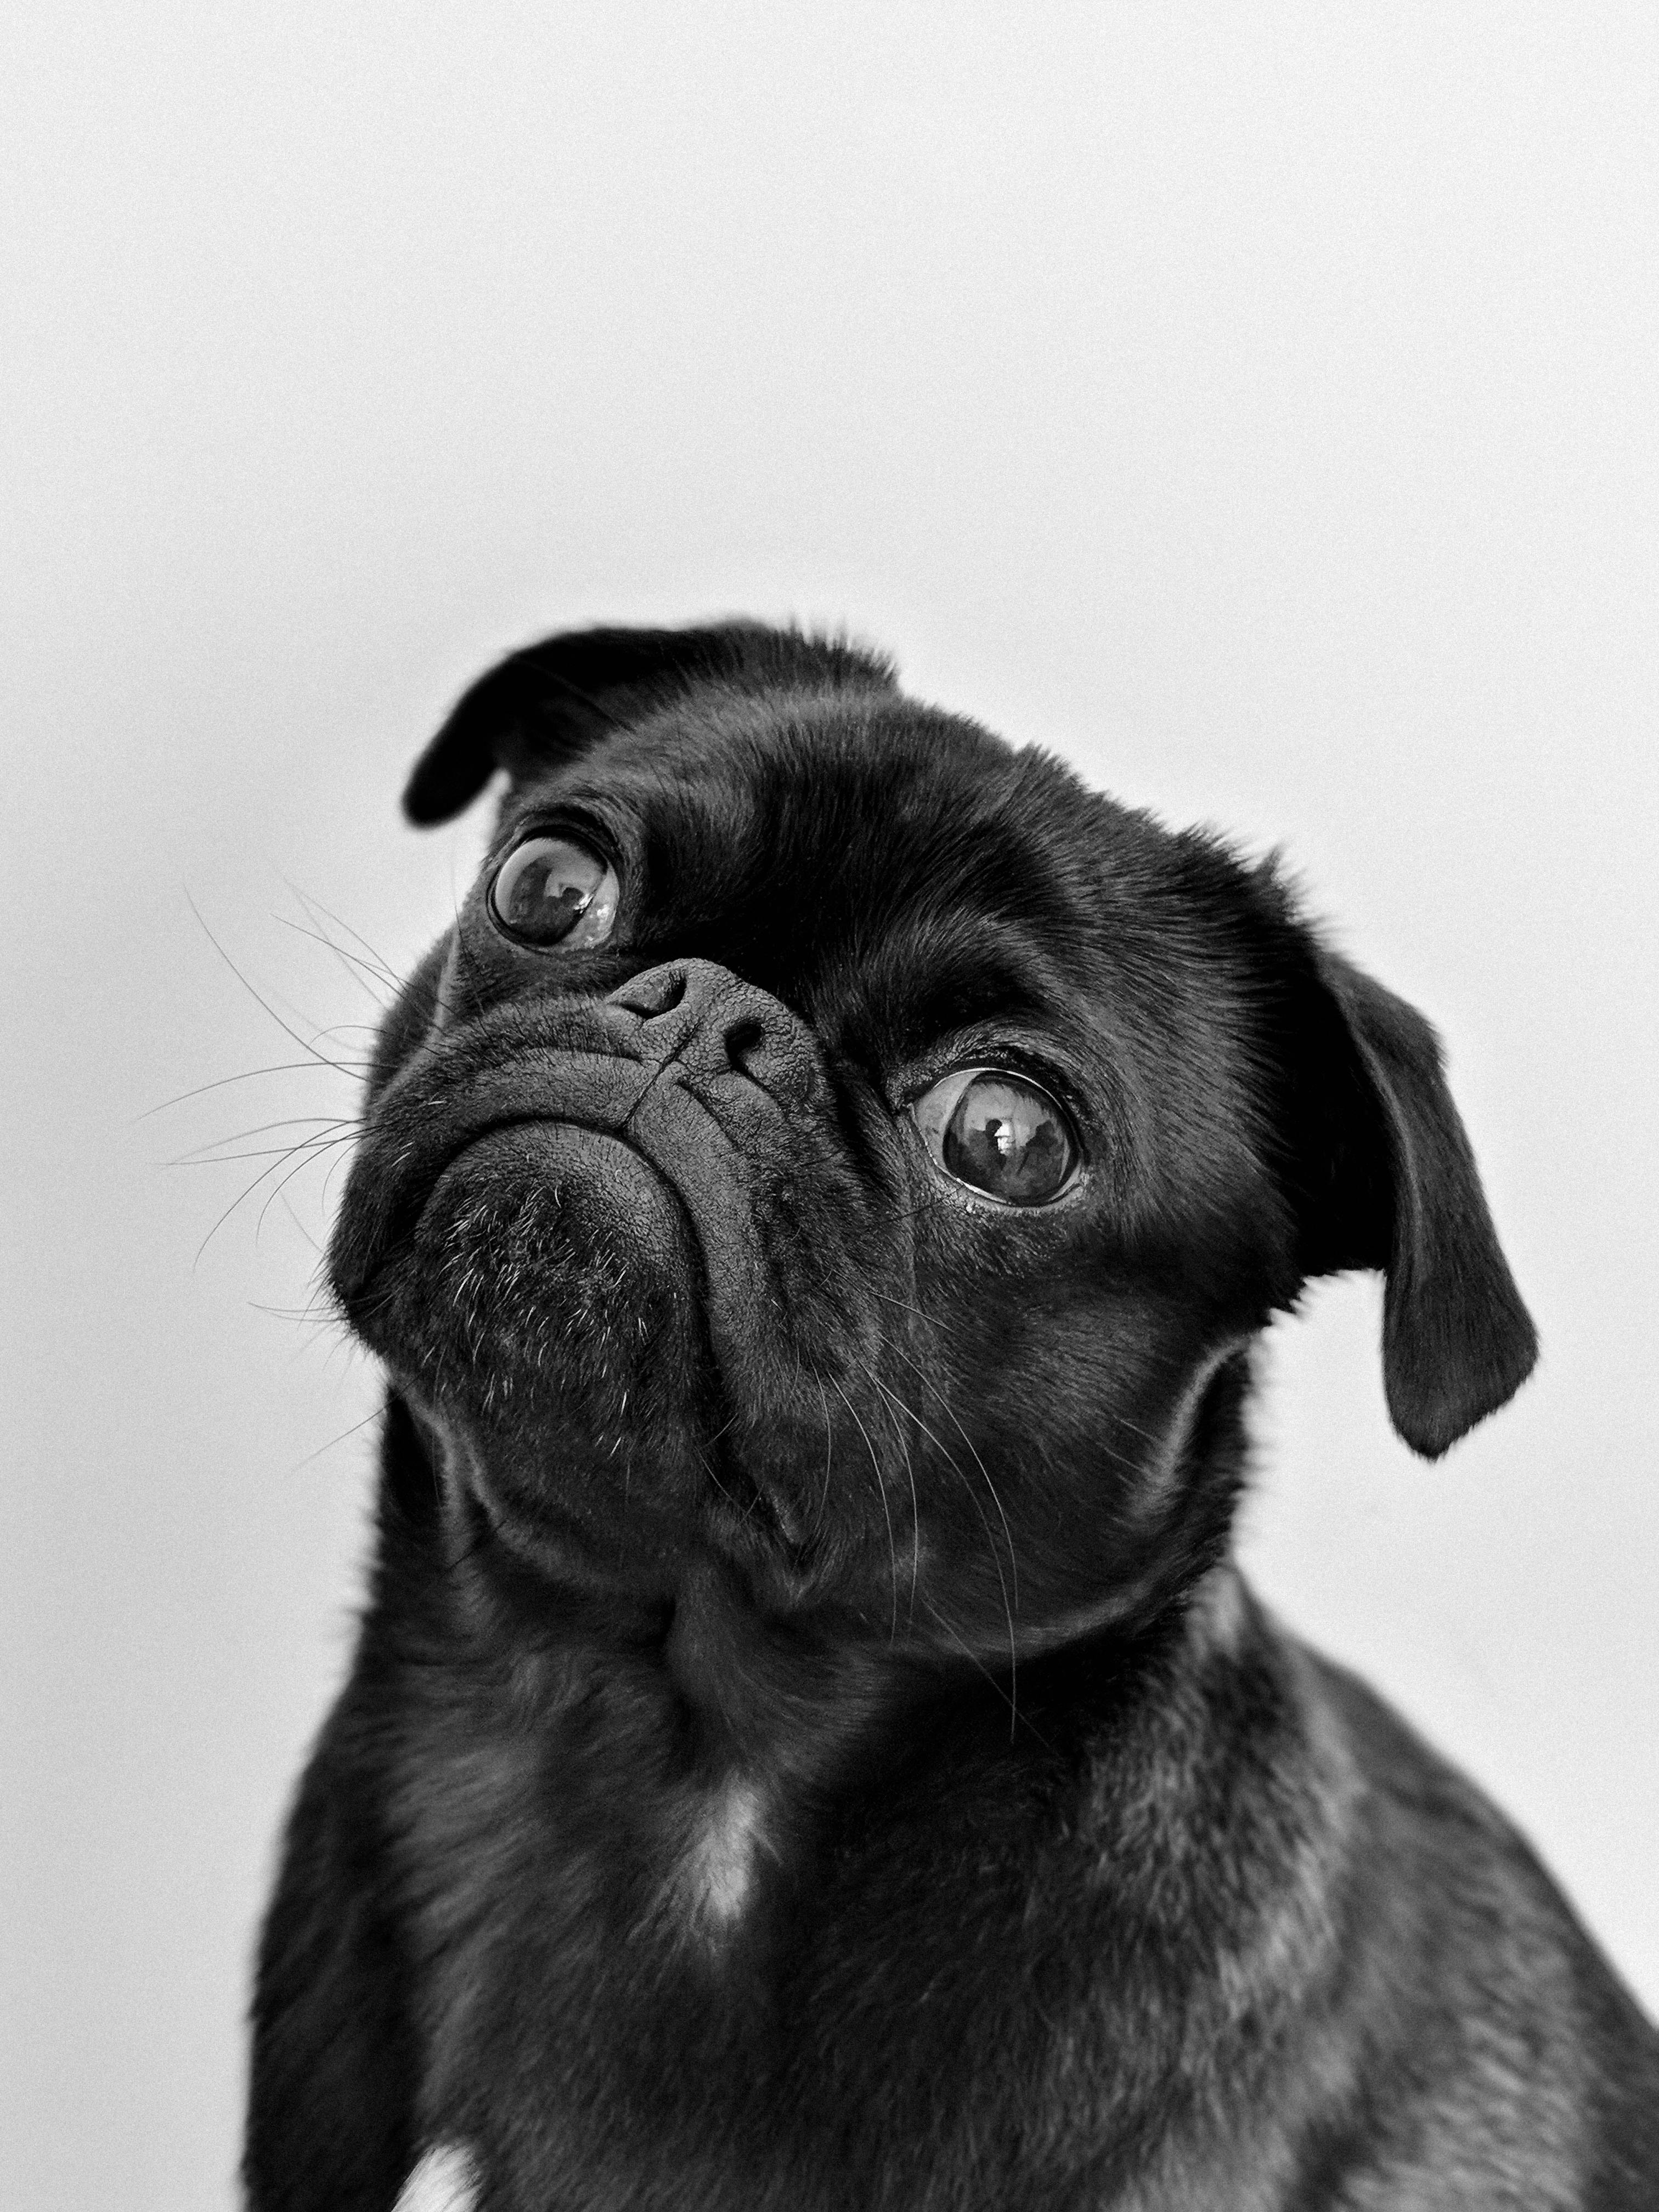 A black pug | Source: Pexels